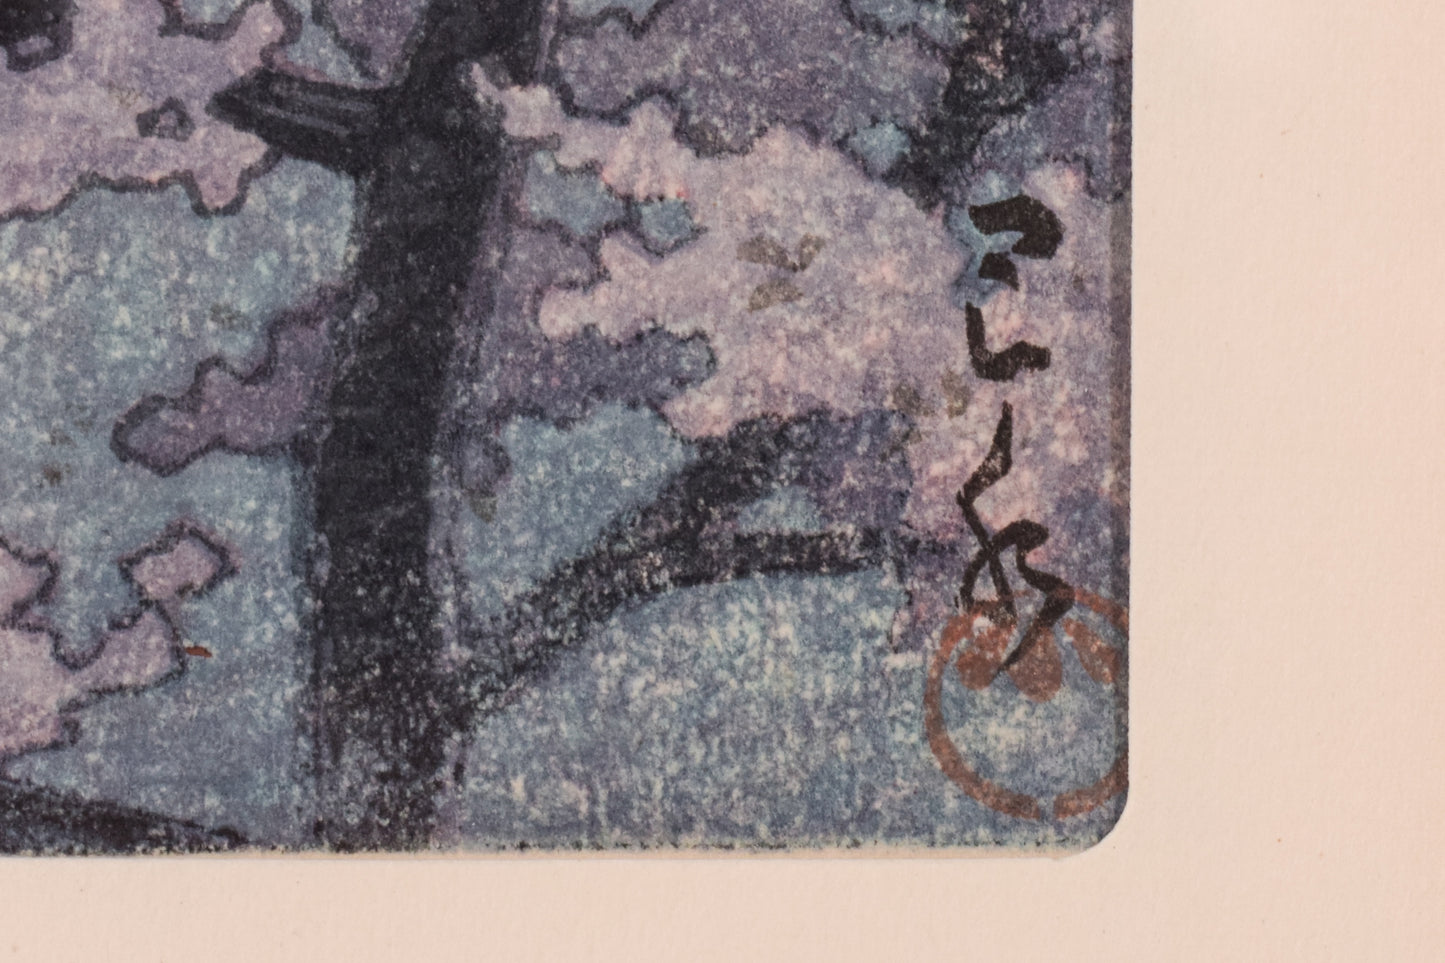 Pair of Japanese Woodblock Prints by Kawase Hasui